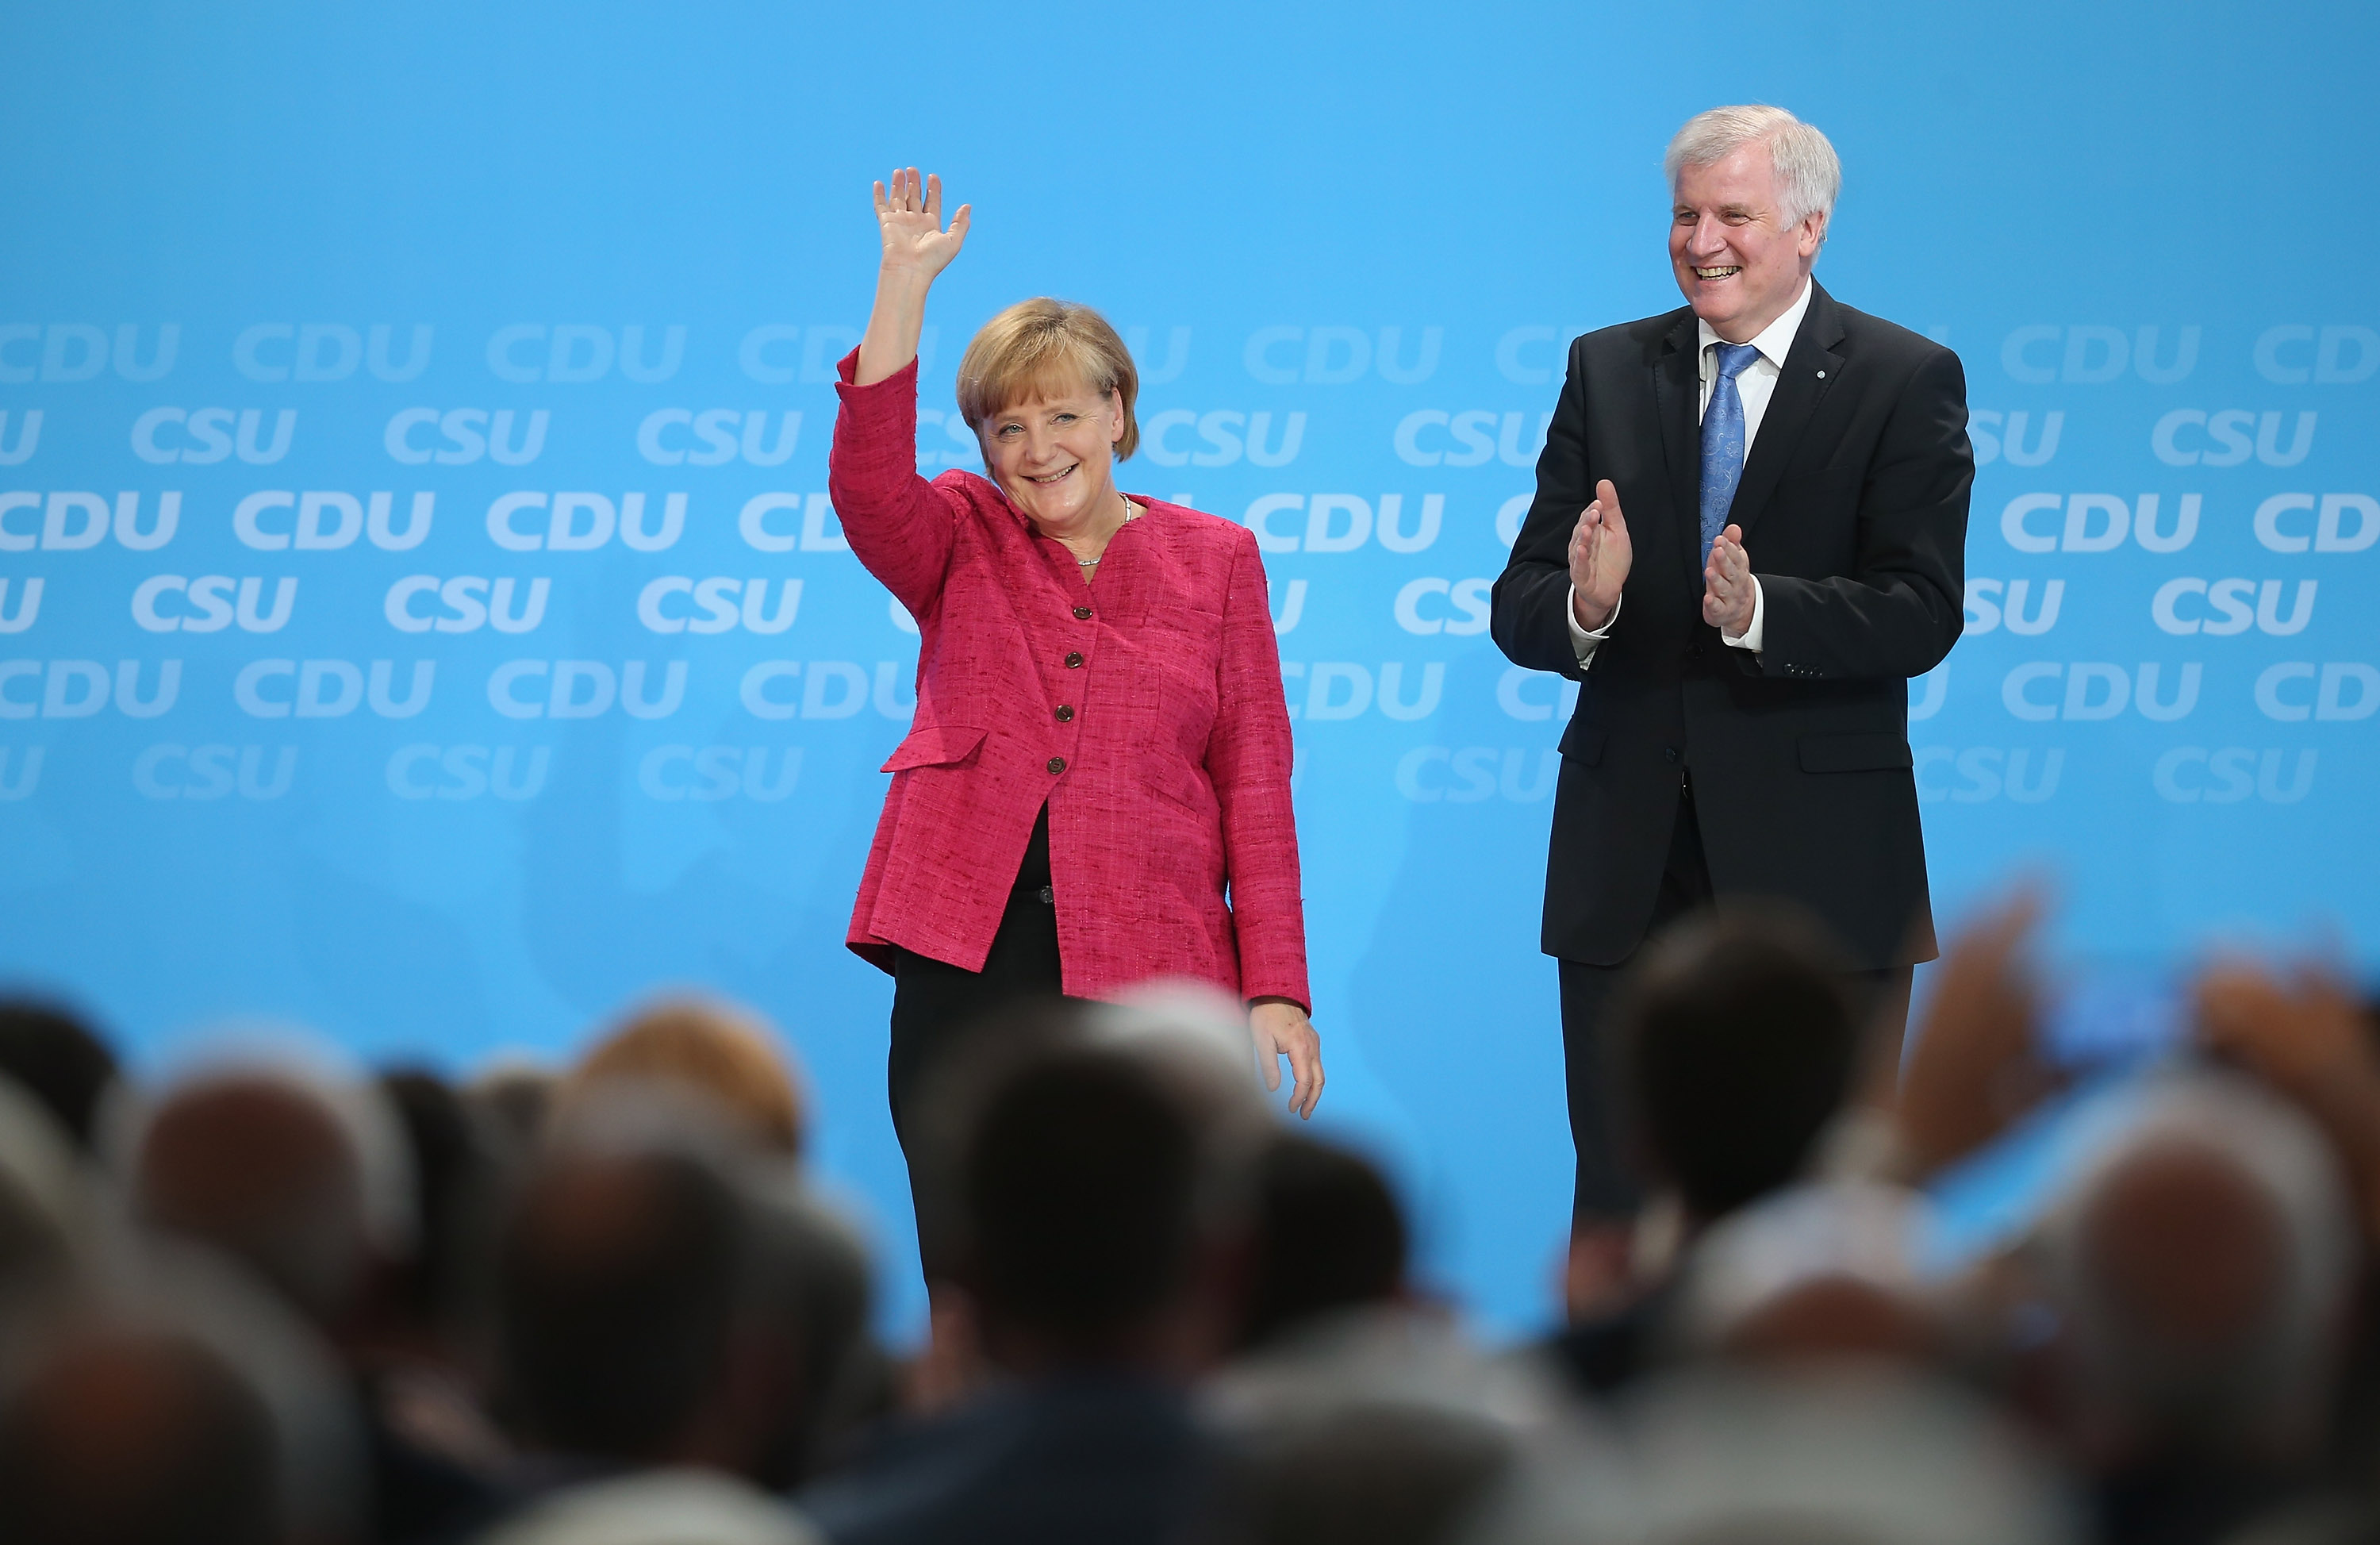 CSU hat „großes Interesse an starker Kanzlerin“: Seehofer ruft Merkel als gemeinsame Kandidatin der Union aus